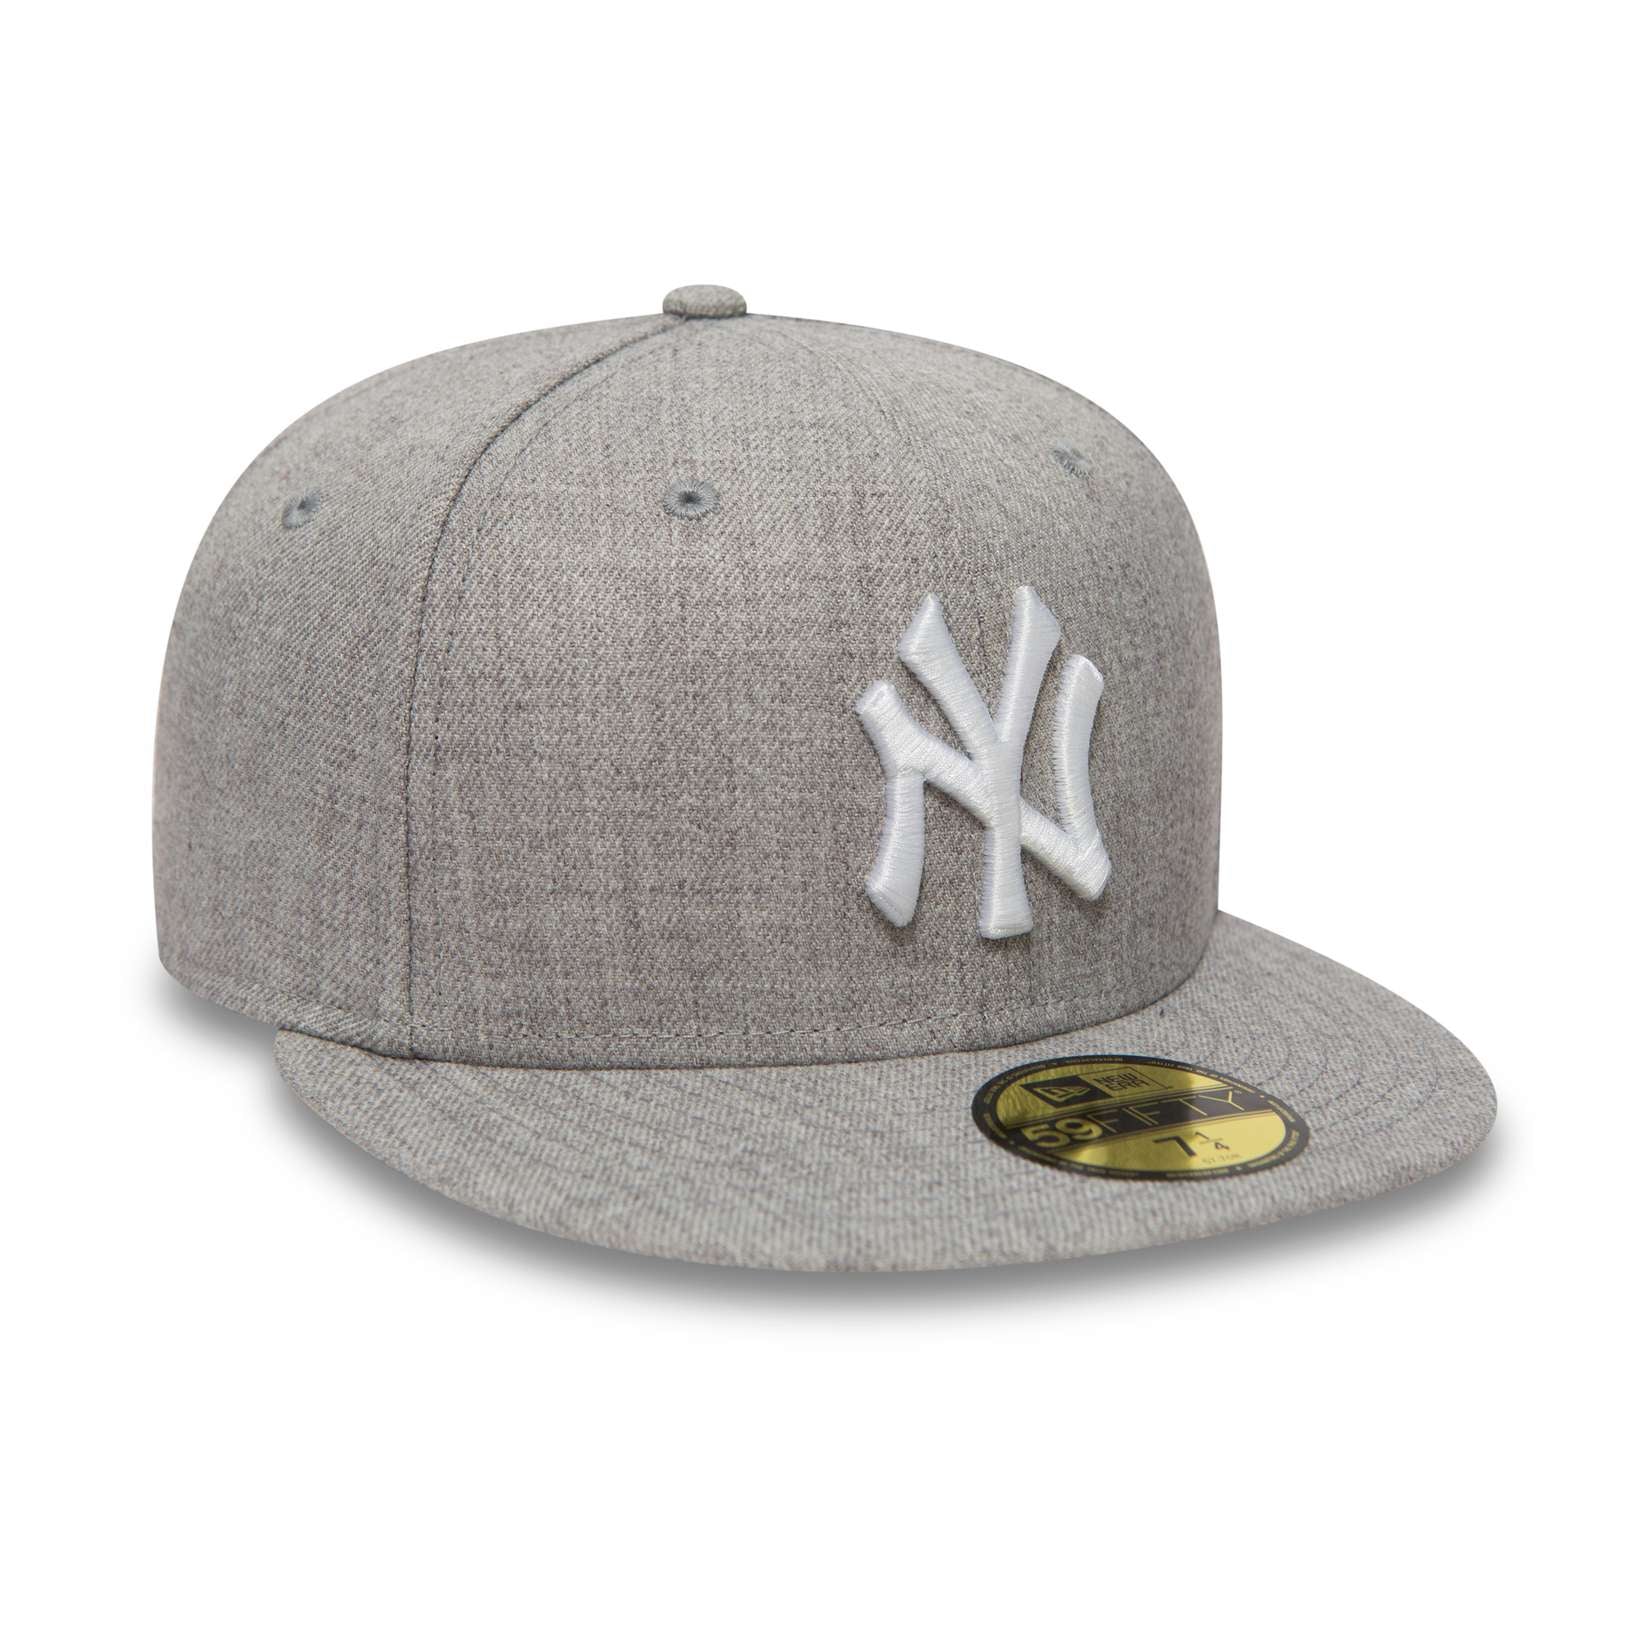 New Era - MLB New York Yankees Basic Heather Fitted Cap - Grau